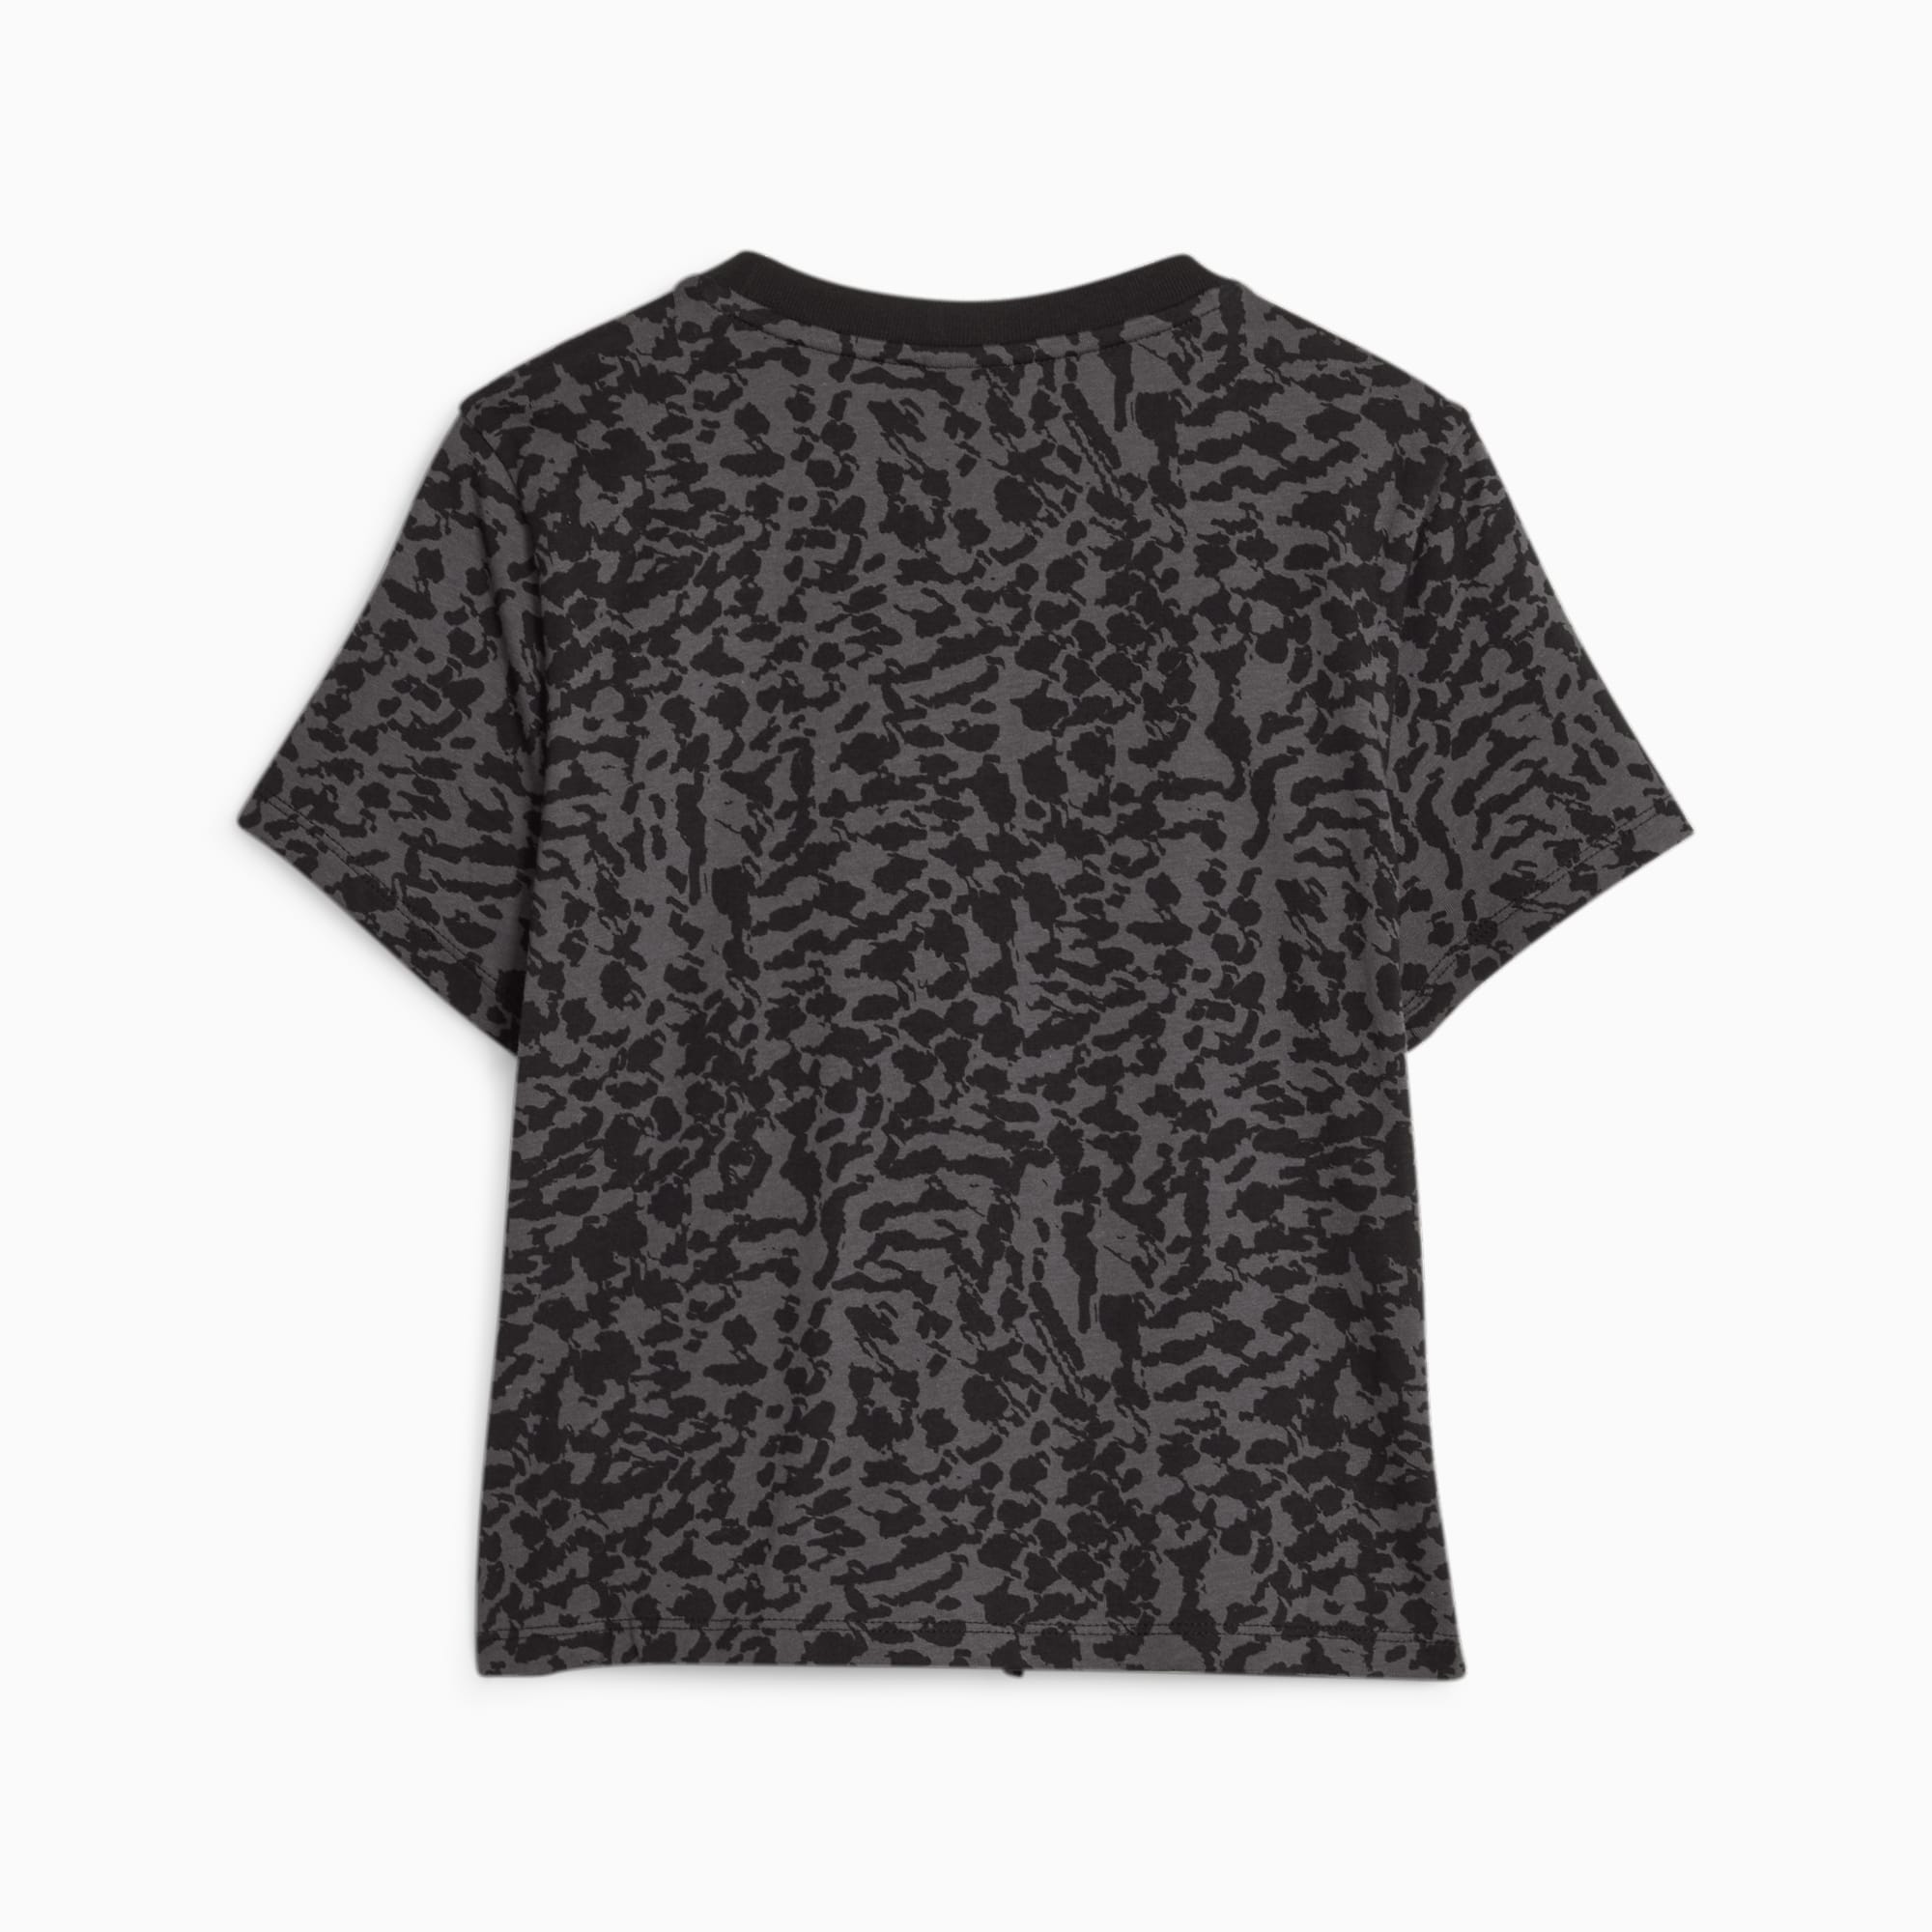 PUMA Ess+ Animal Youth T-Shirt, Black